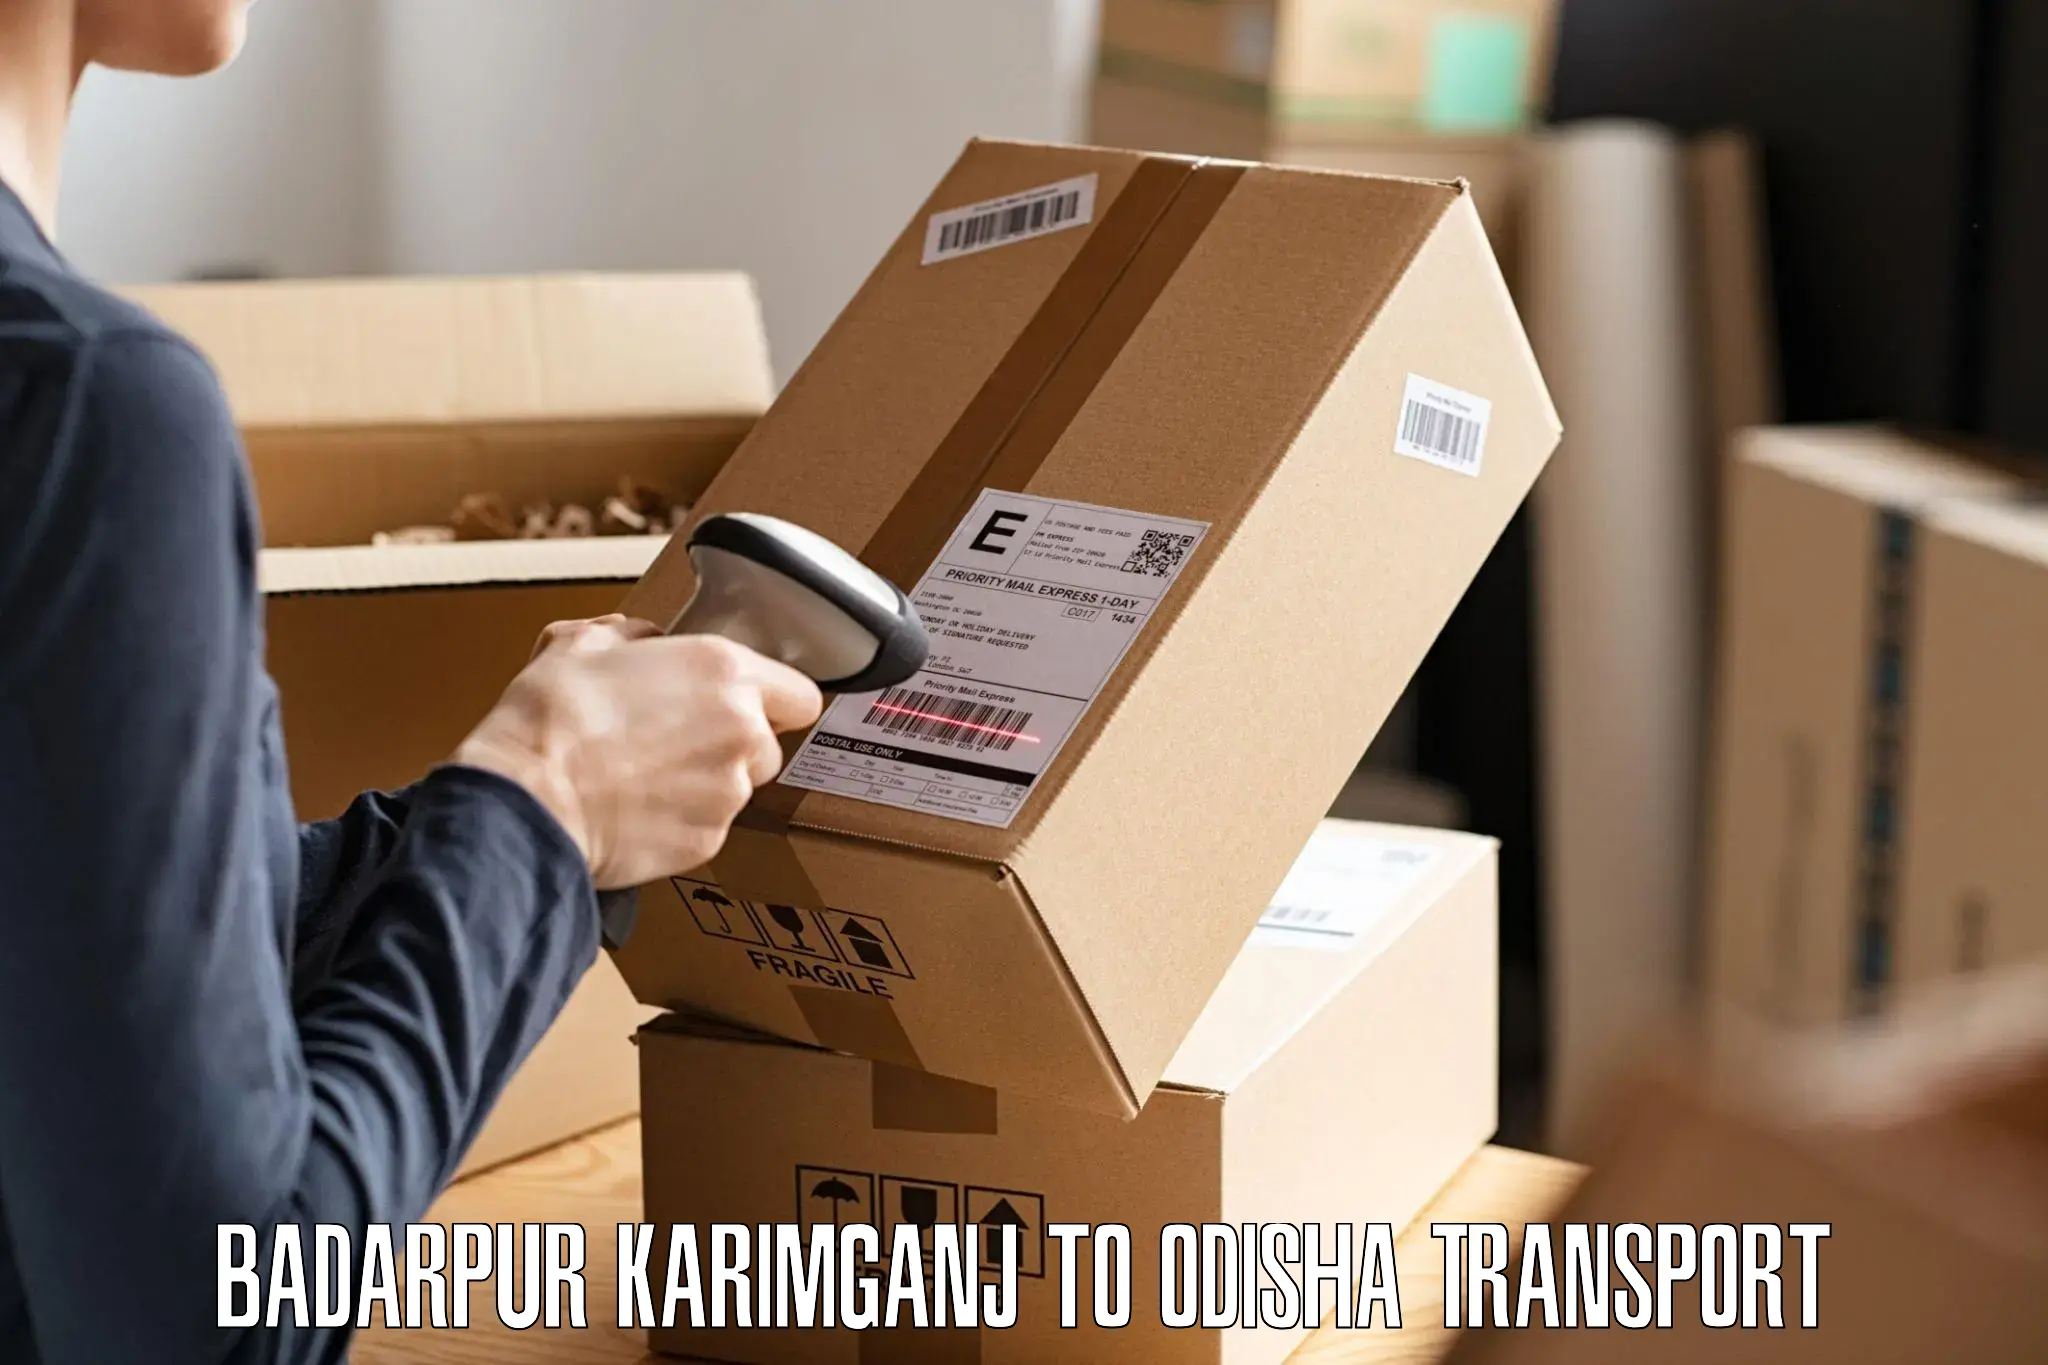 Lorry transport service Badarpur Karimganj to Dhamanagar